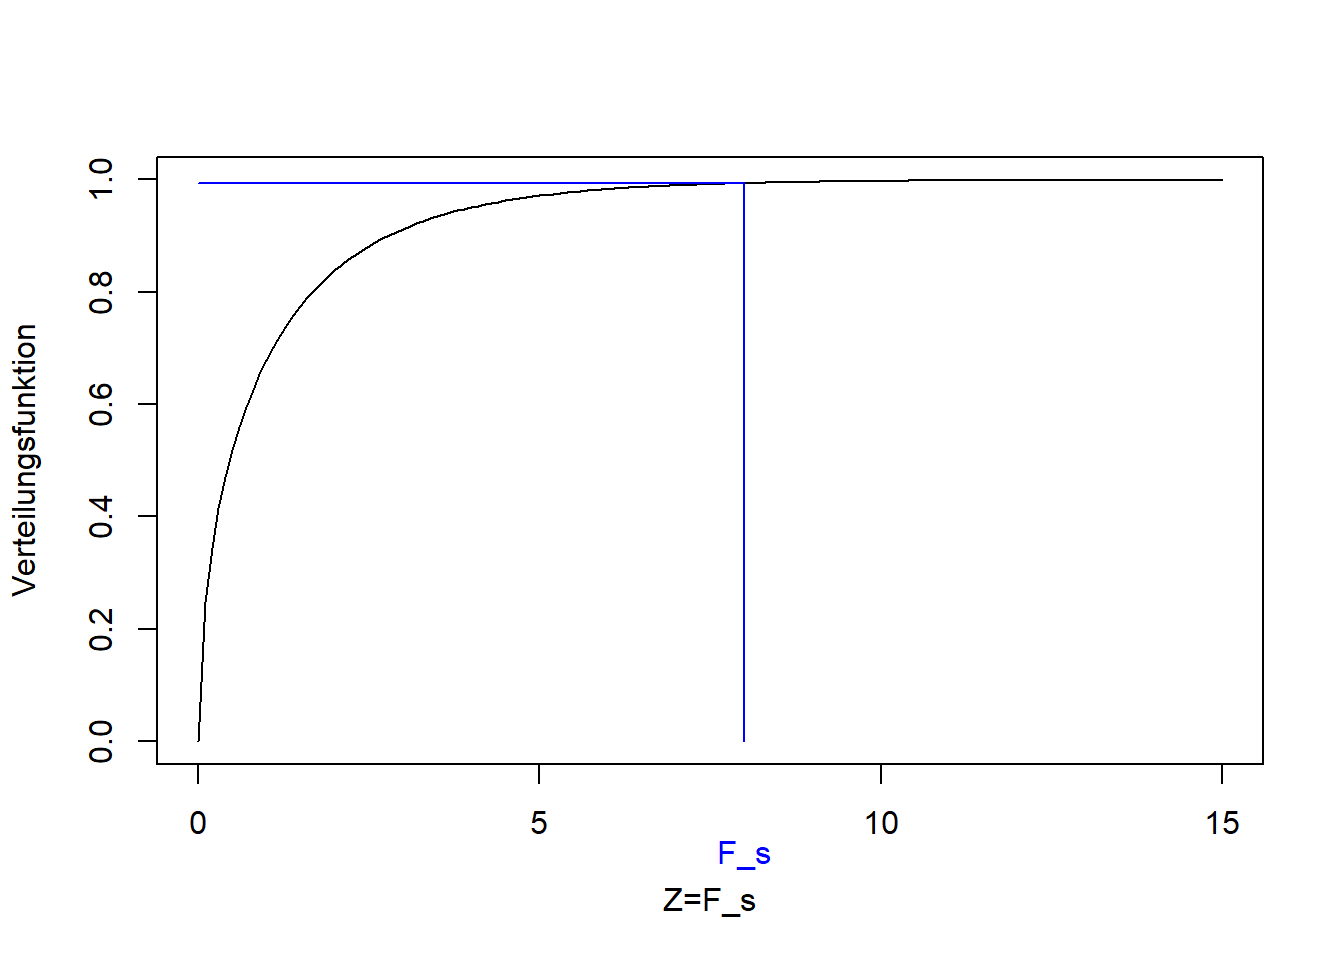 Verteilungsfunktion der F-Verteilung der F-Statistik $F_s$. Blau: Bestimmter Wert für $F_s$ und entsprechender Wert der Verteilungsfunktion.